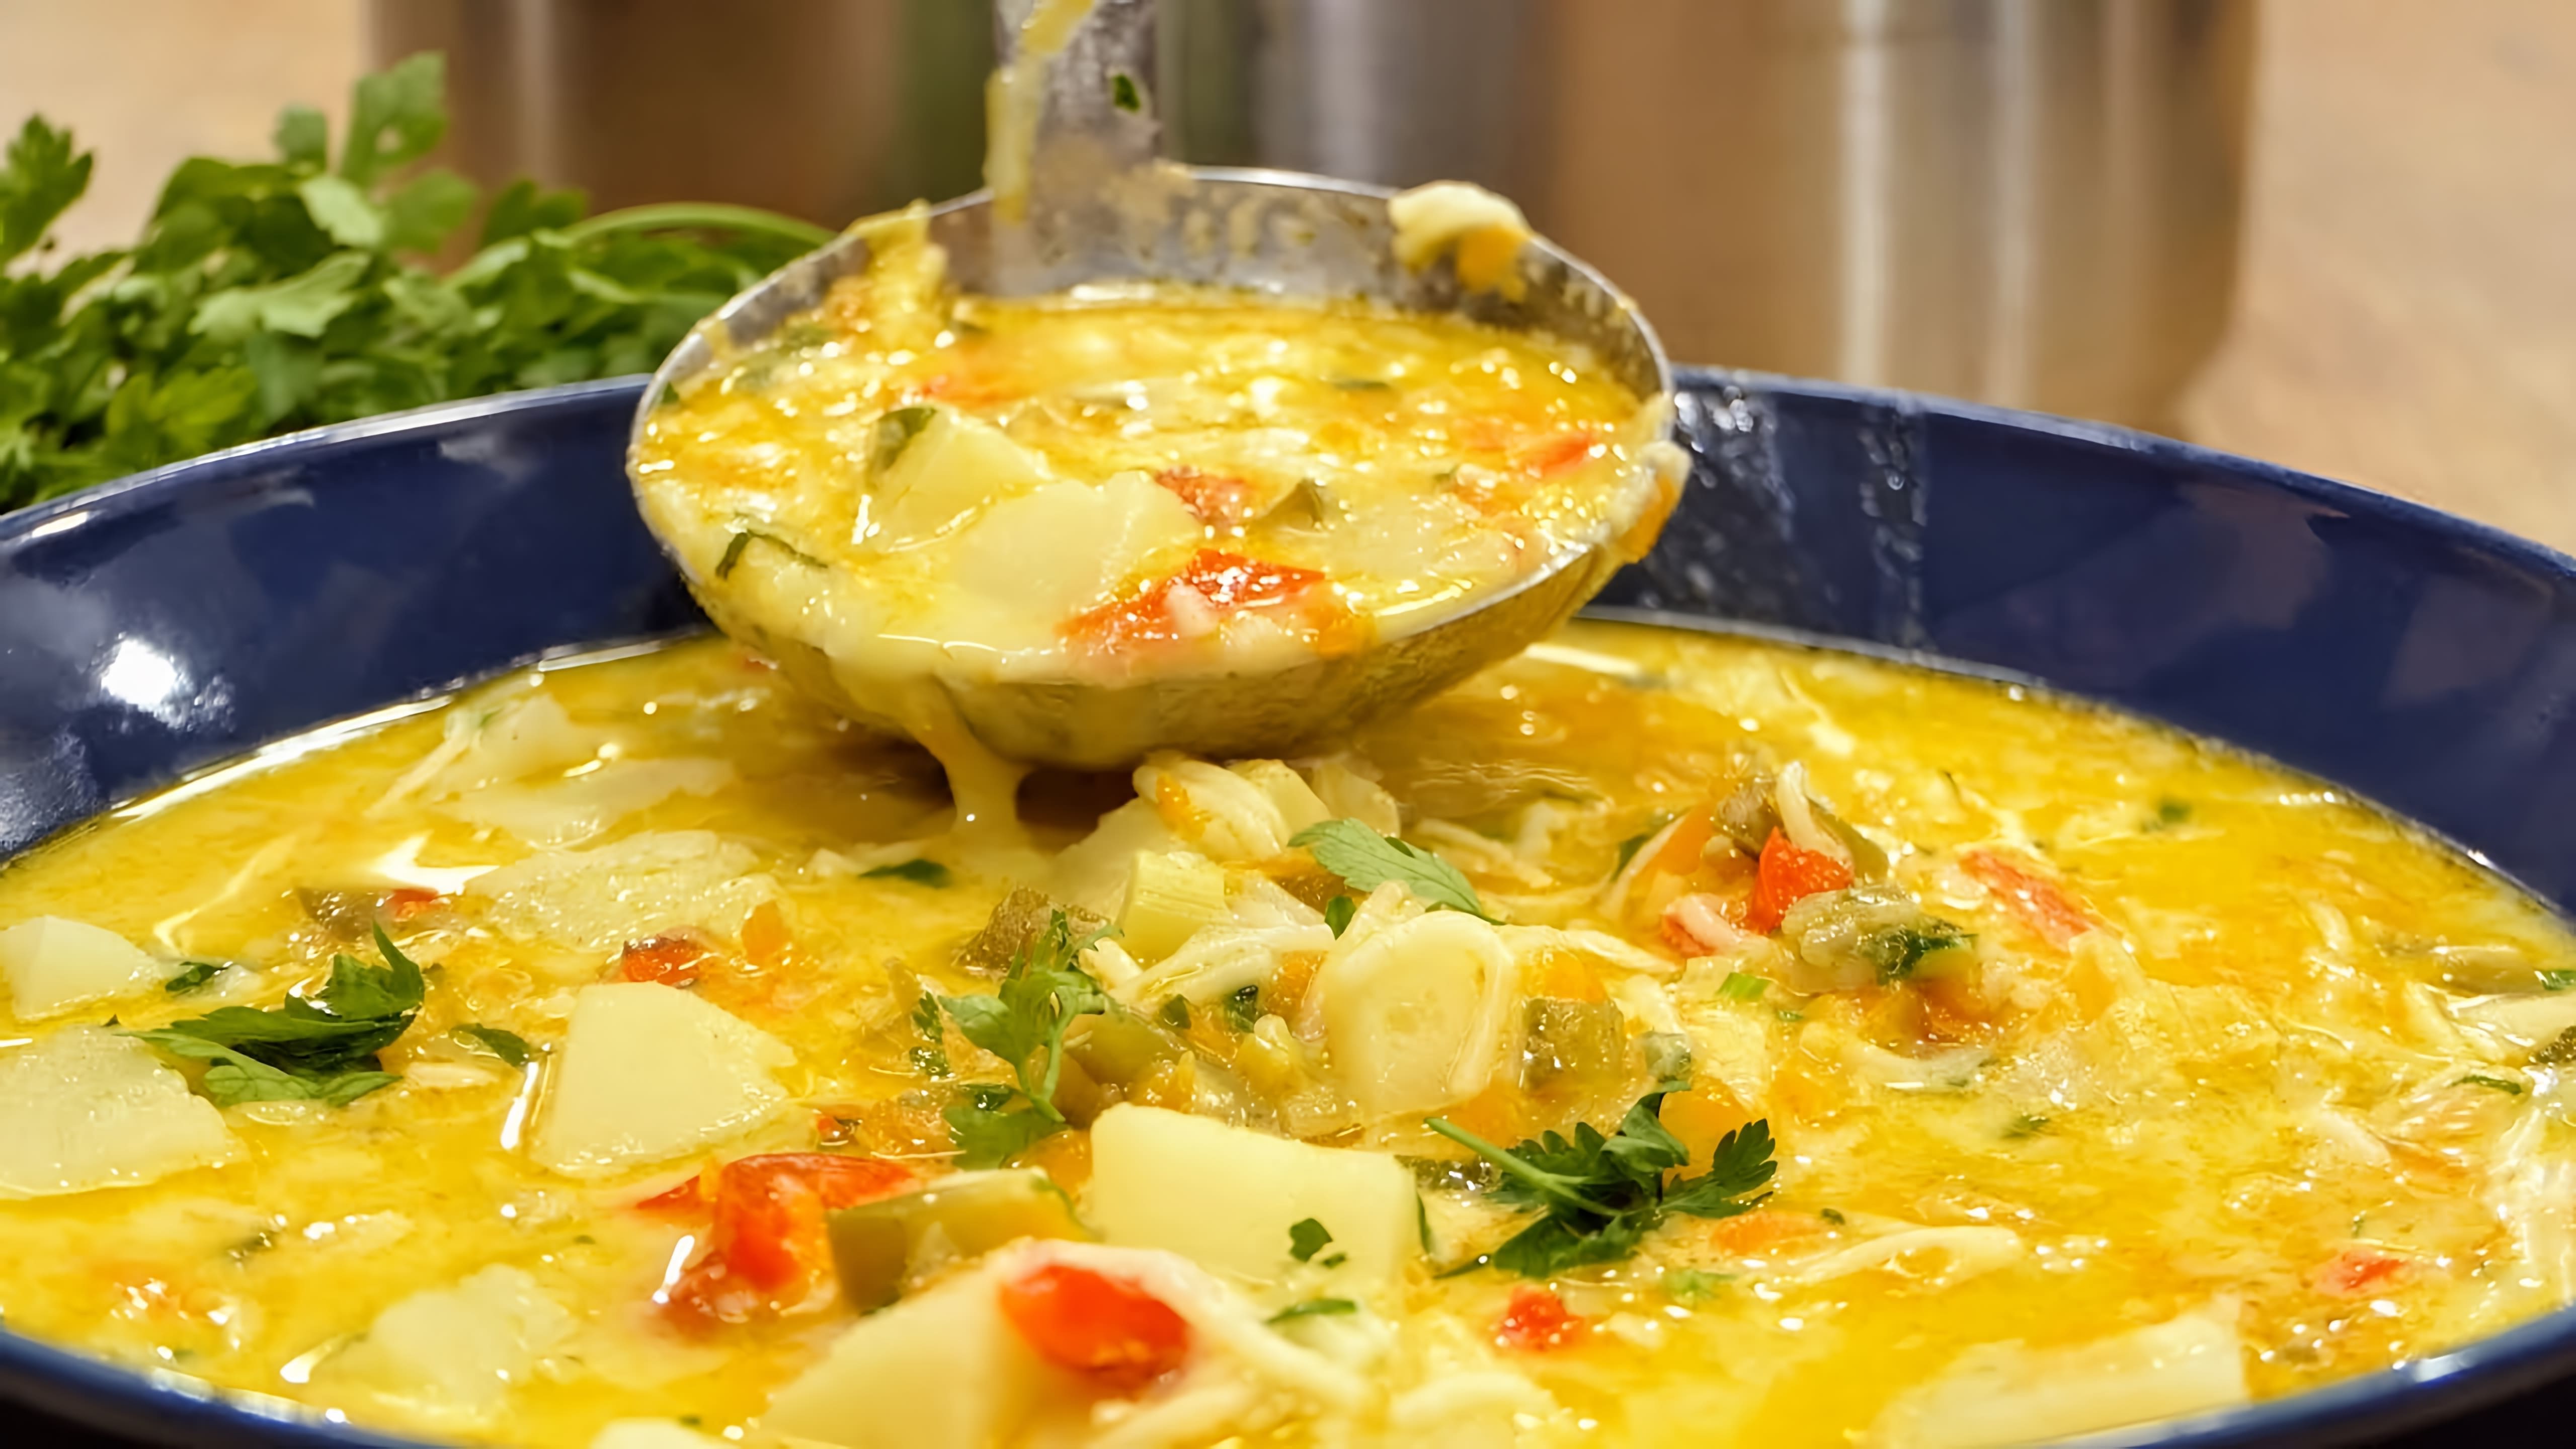 В этом видео демонстрируется процесс приготовления вкусной супы